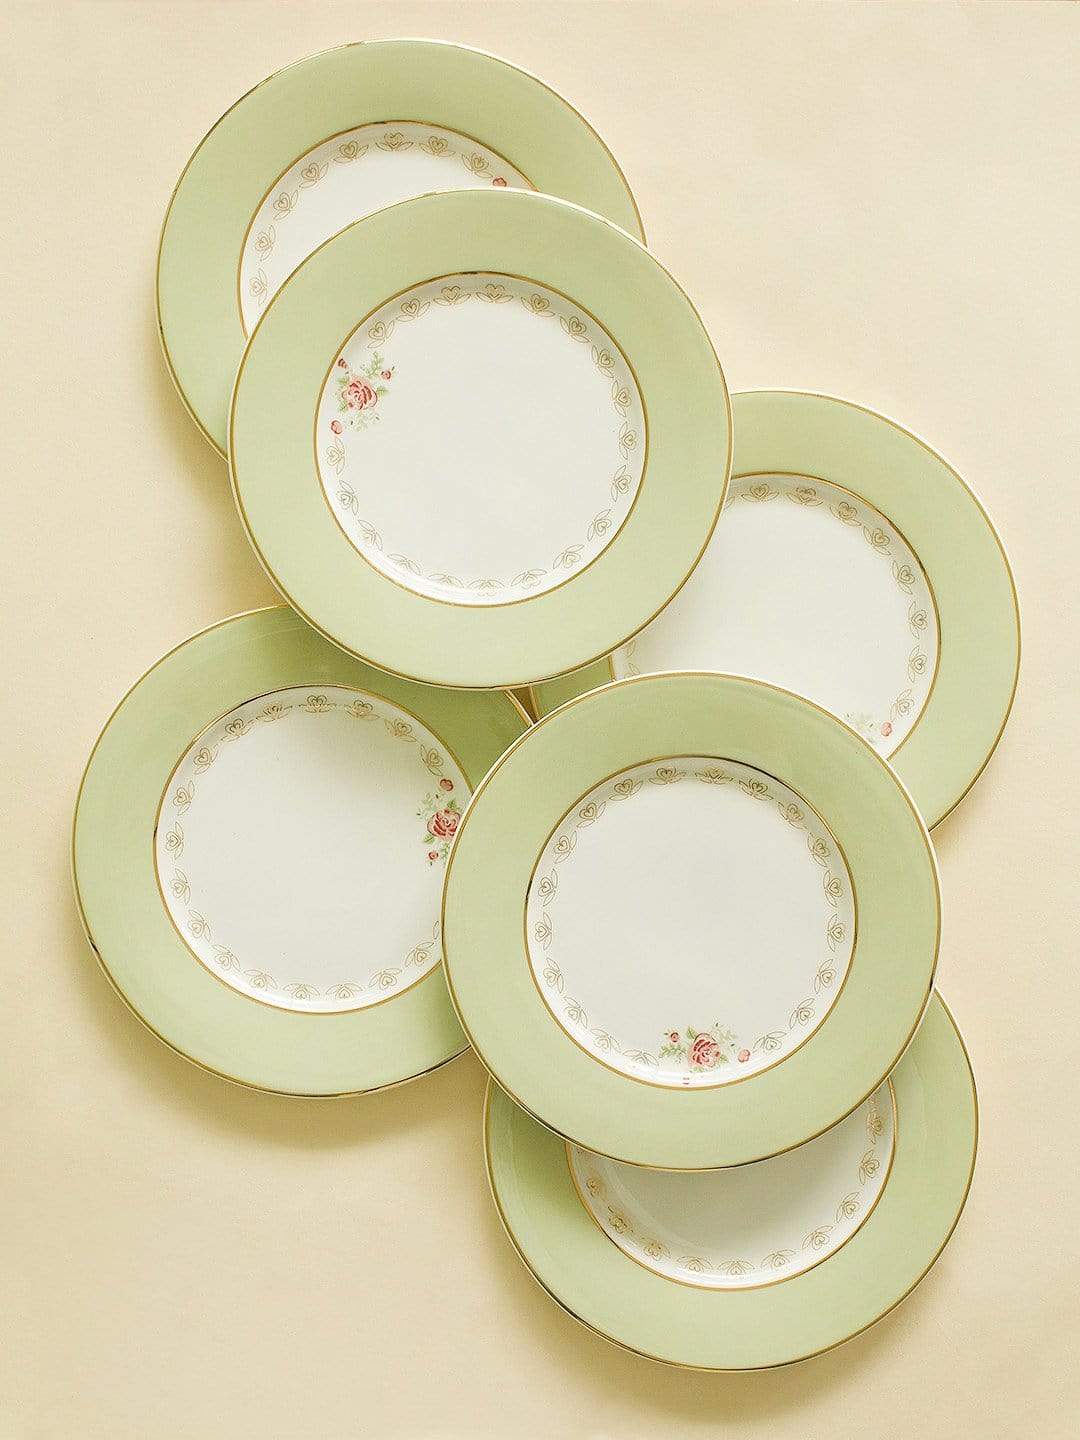 Vintage Rose Dessert Plates Set of 6 - Mint Green